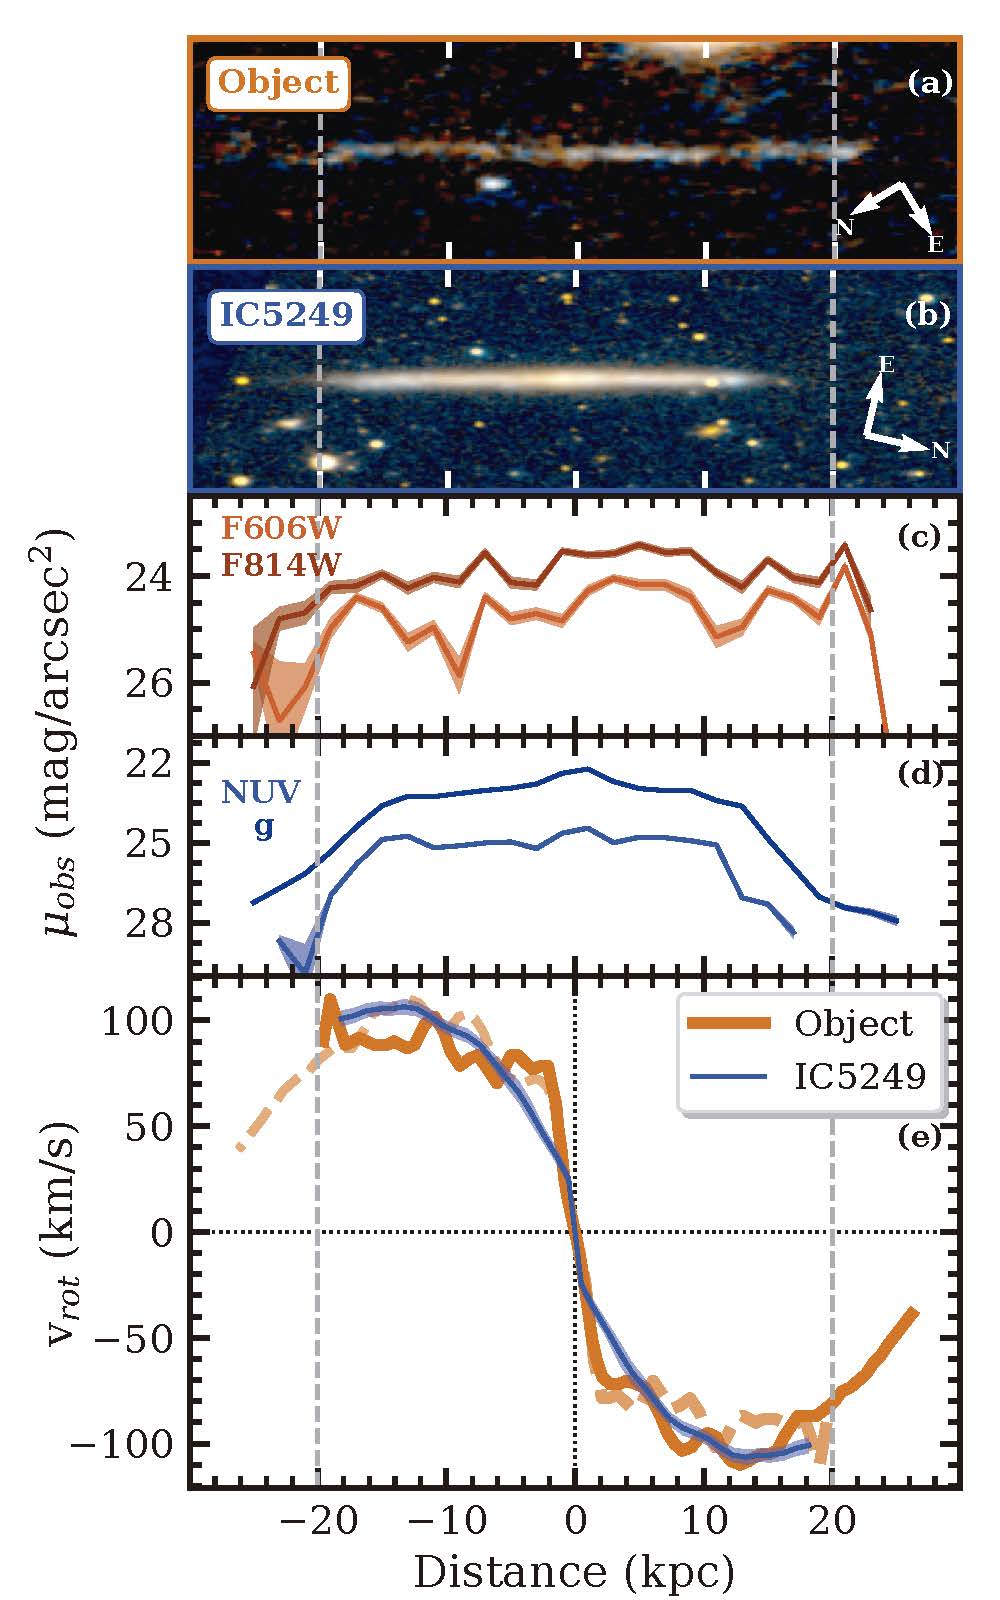 Srovnání vzdáleného hvězdného pásu (object) s místní plochou galaxií IC5249 pozorovanou zboku: obrázky (a, b); profil absolutní jasnosti (c, d je v UV spektru); rotační křivky (e). Nový objekt a galaxie IC5249 jsou si ve fyzikálních parametrech velmi